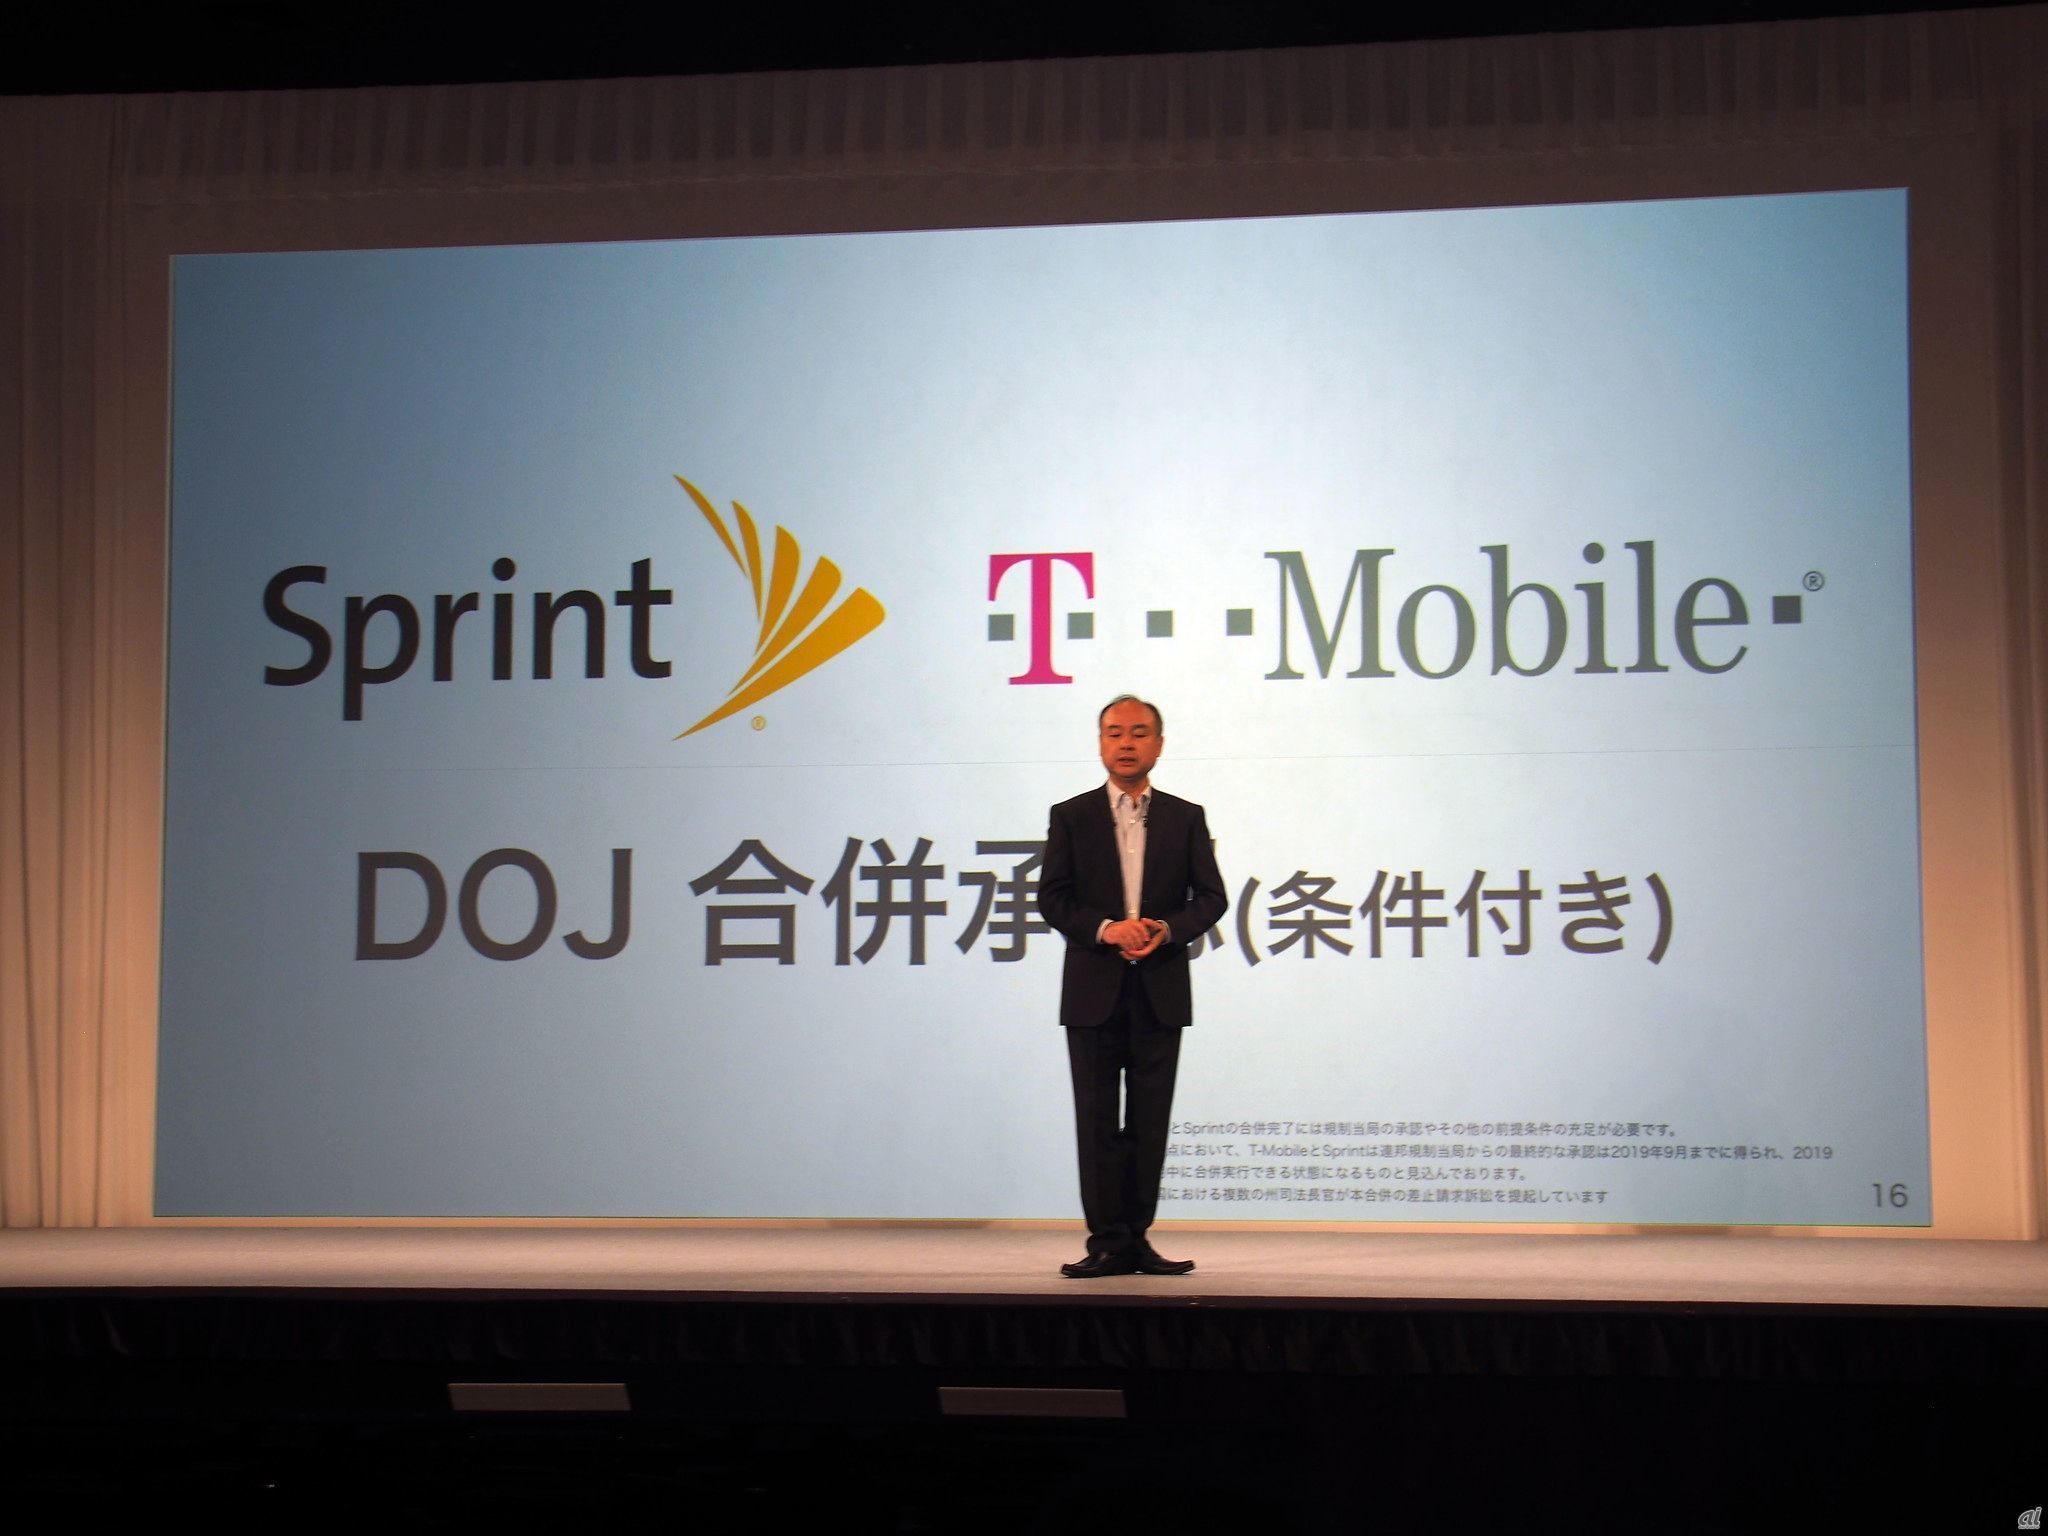 買収当初からT-Mobile米国法人との合併に向け取り組みを進めてきたSprintだが、米国当局の承認が得られたことで合併に大きく前進したことになる